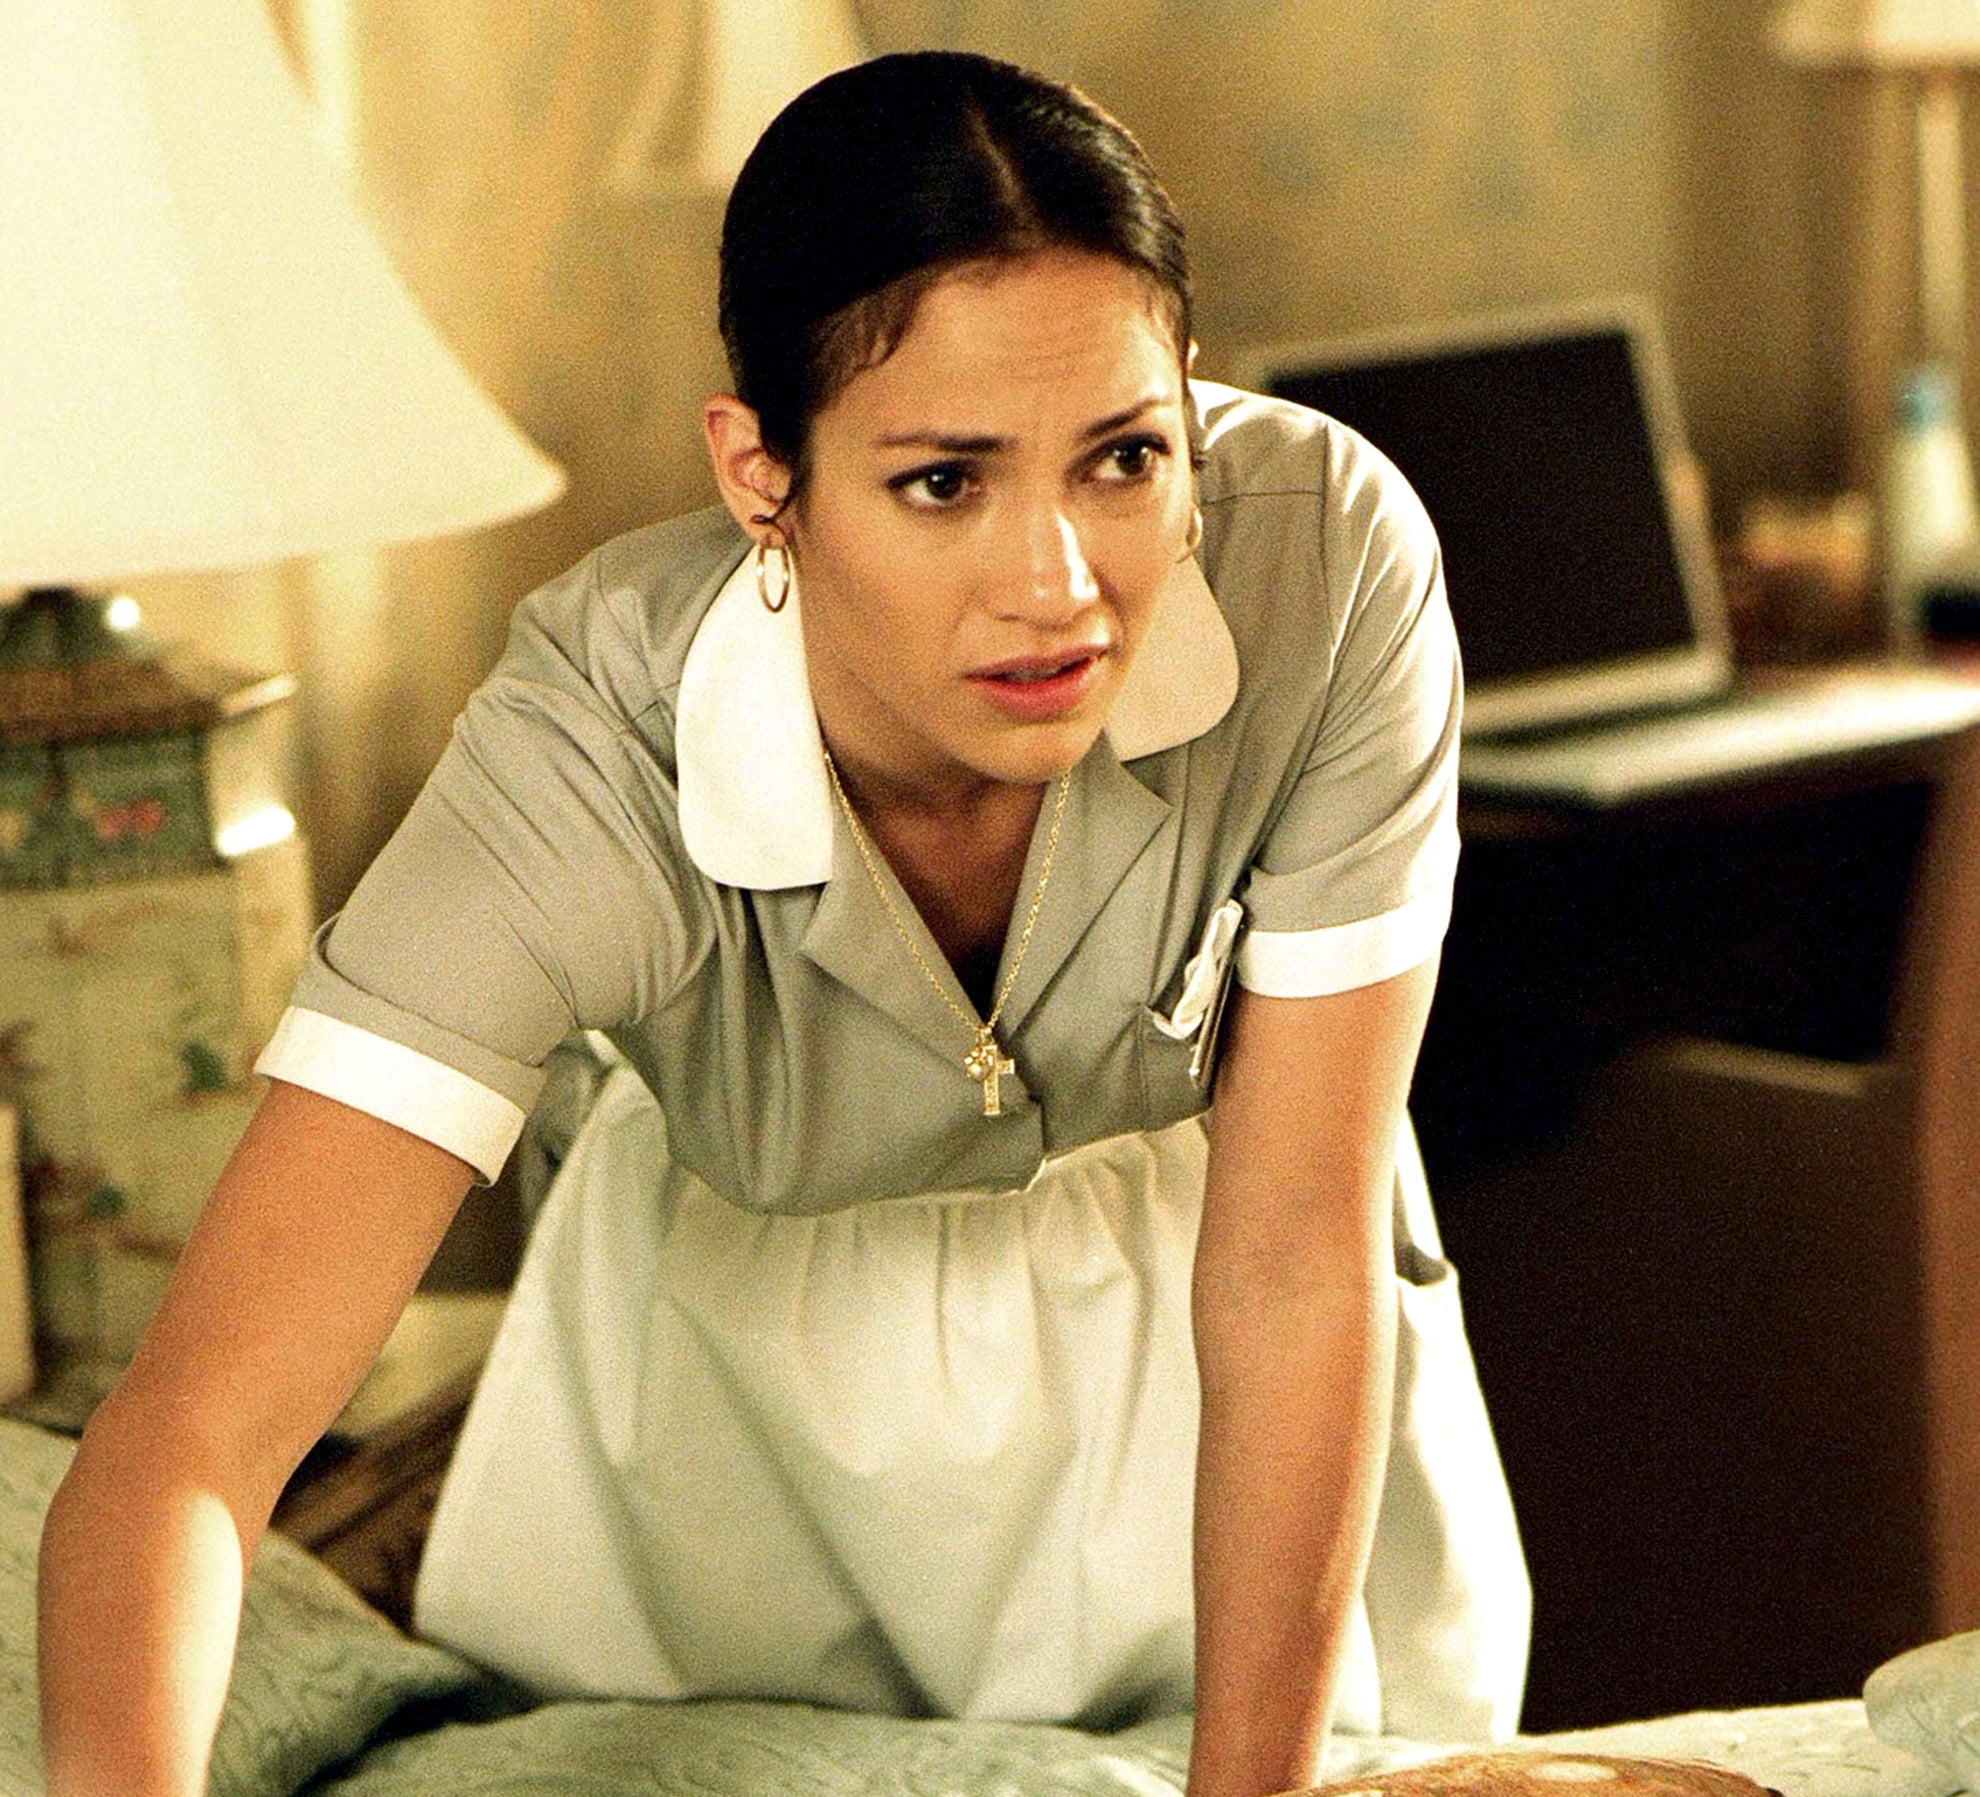 Jennifer Lopez in Maid in Manhattan